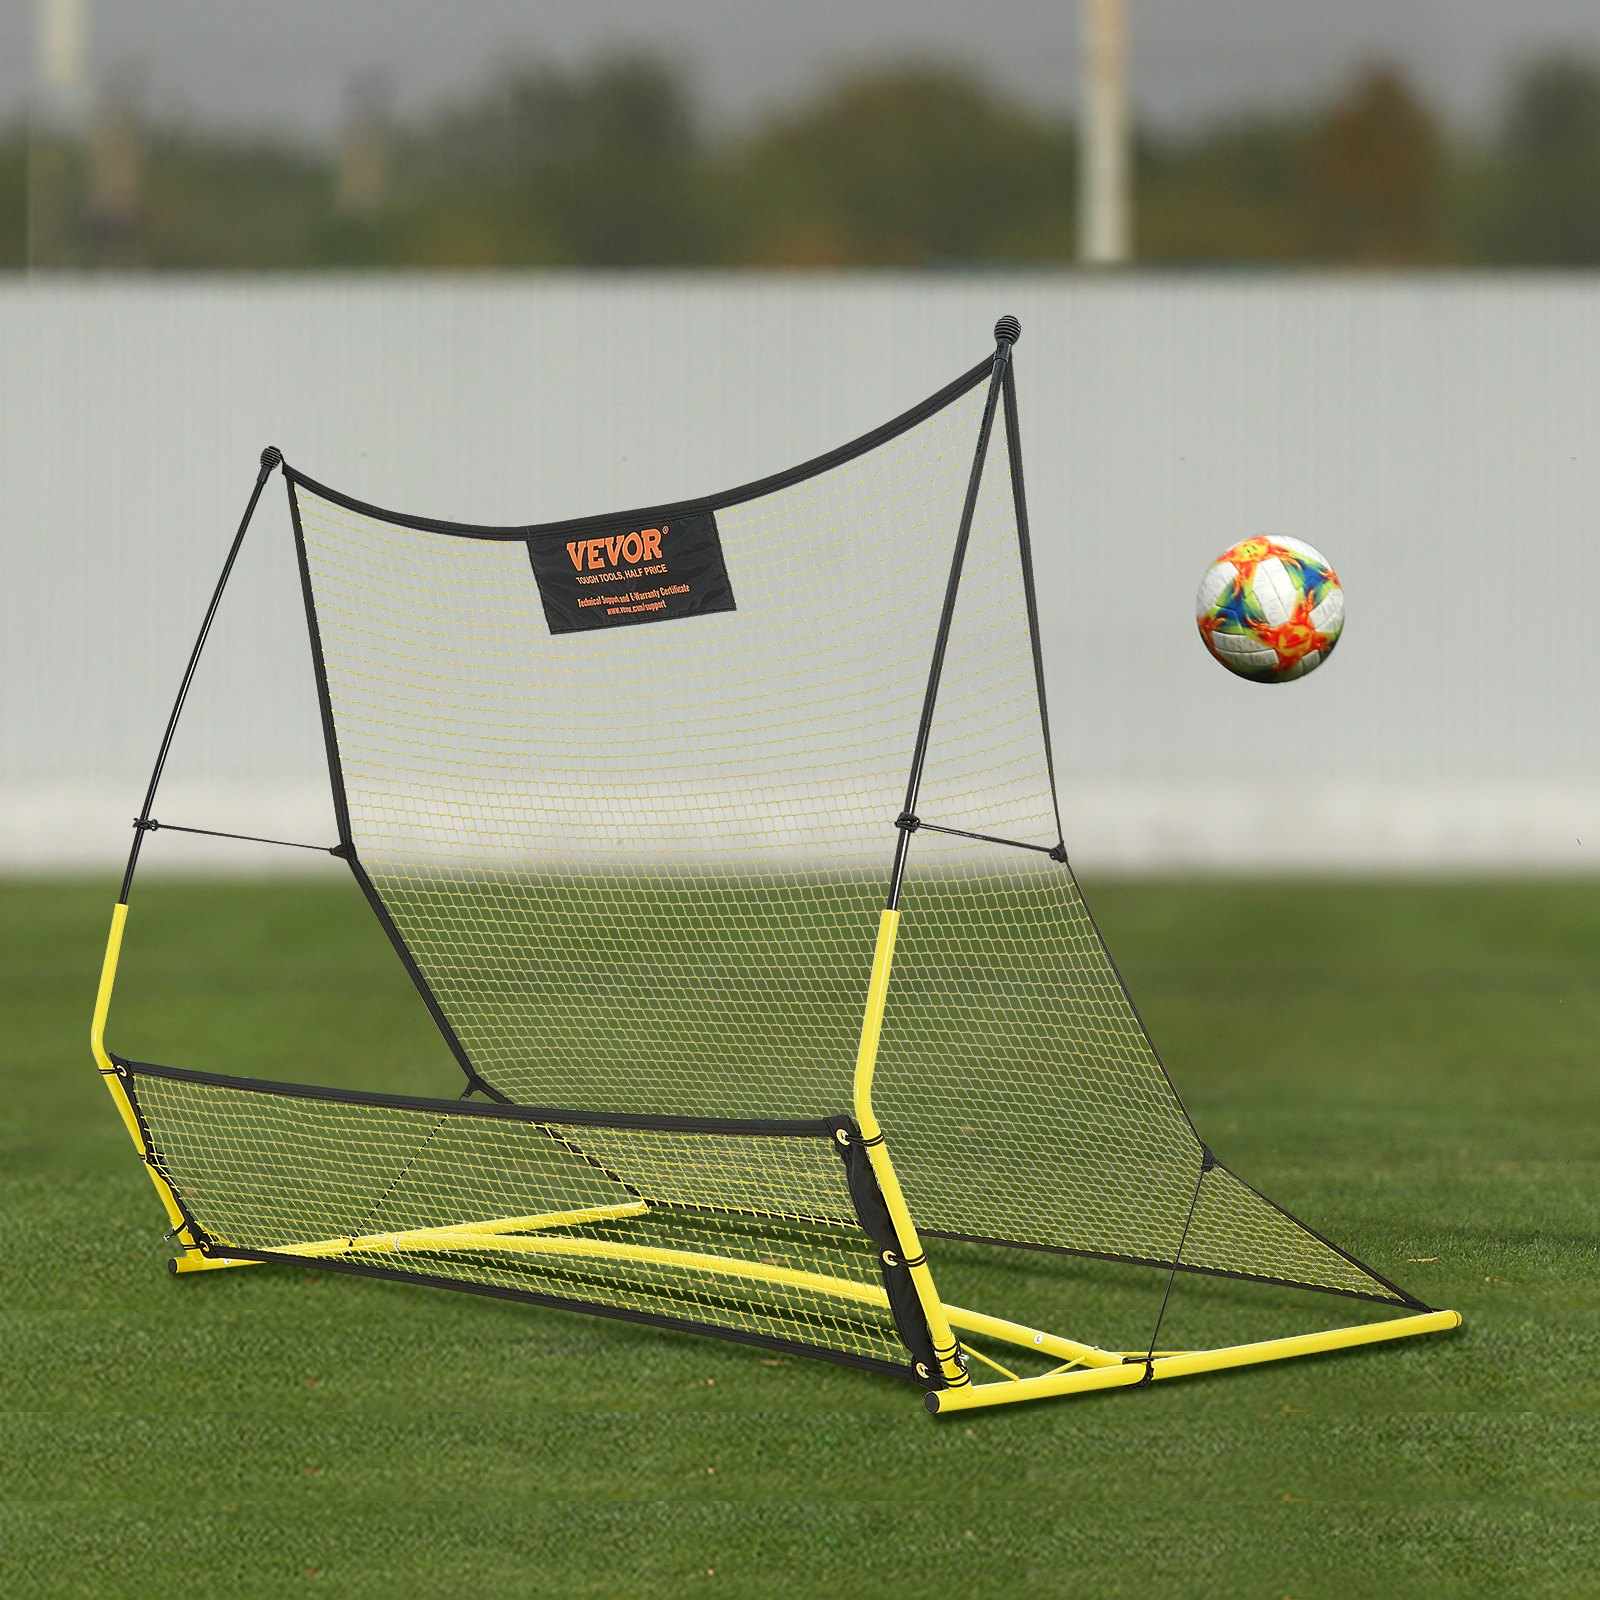 VEVOR Soccer Trainer, 2-IN-1 Portable Soccer Rebounder Net, 71"x40" Iron Soccer Practice Equipment, Goodies N Stuff